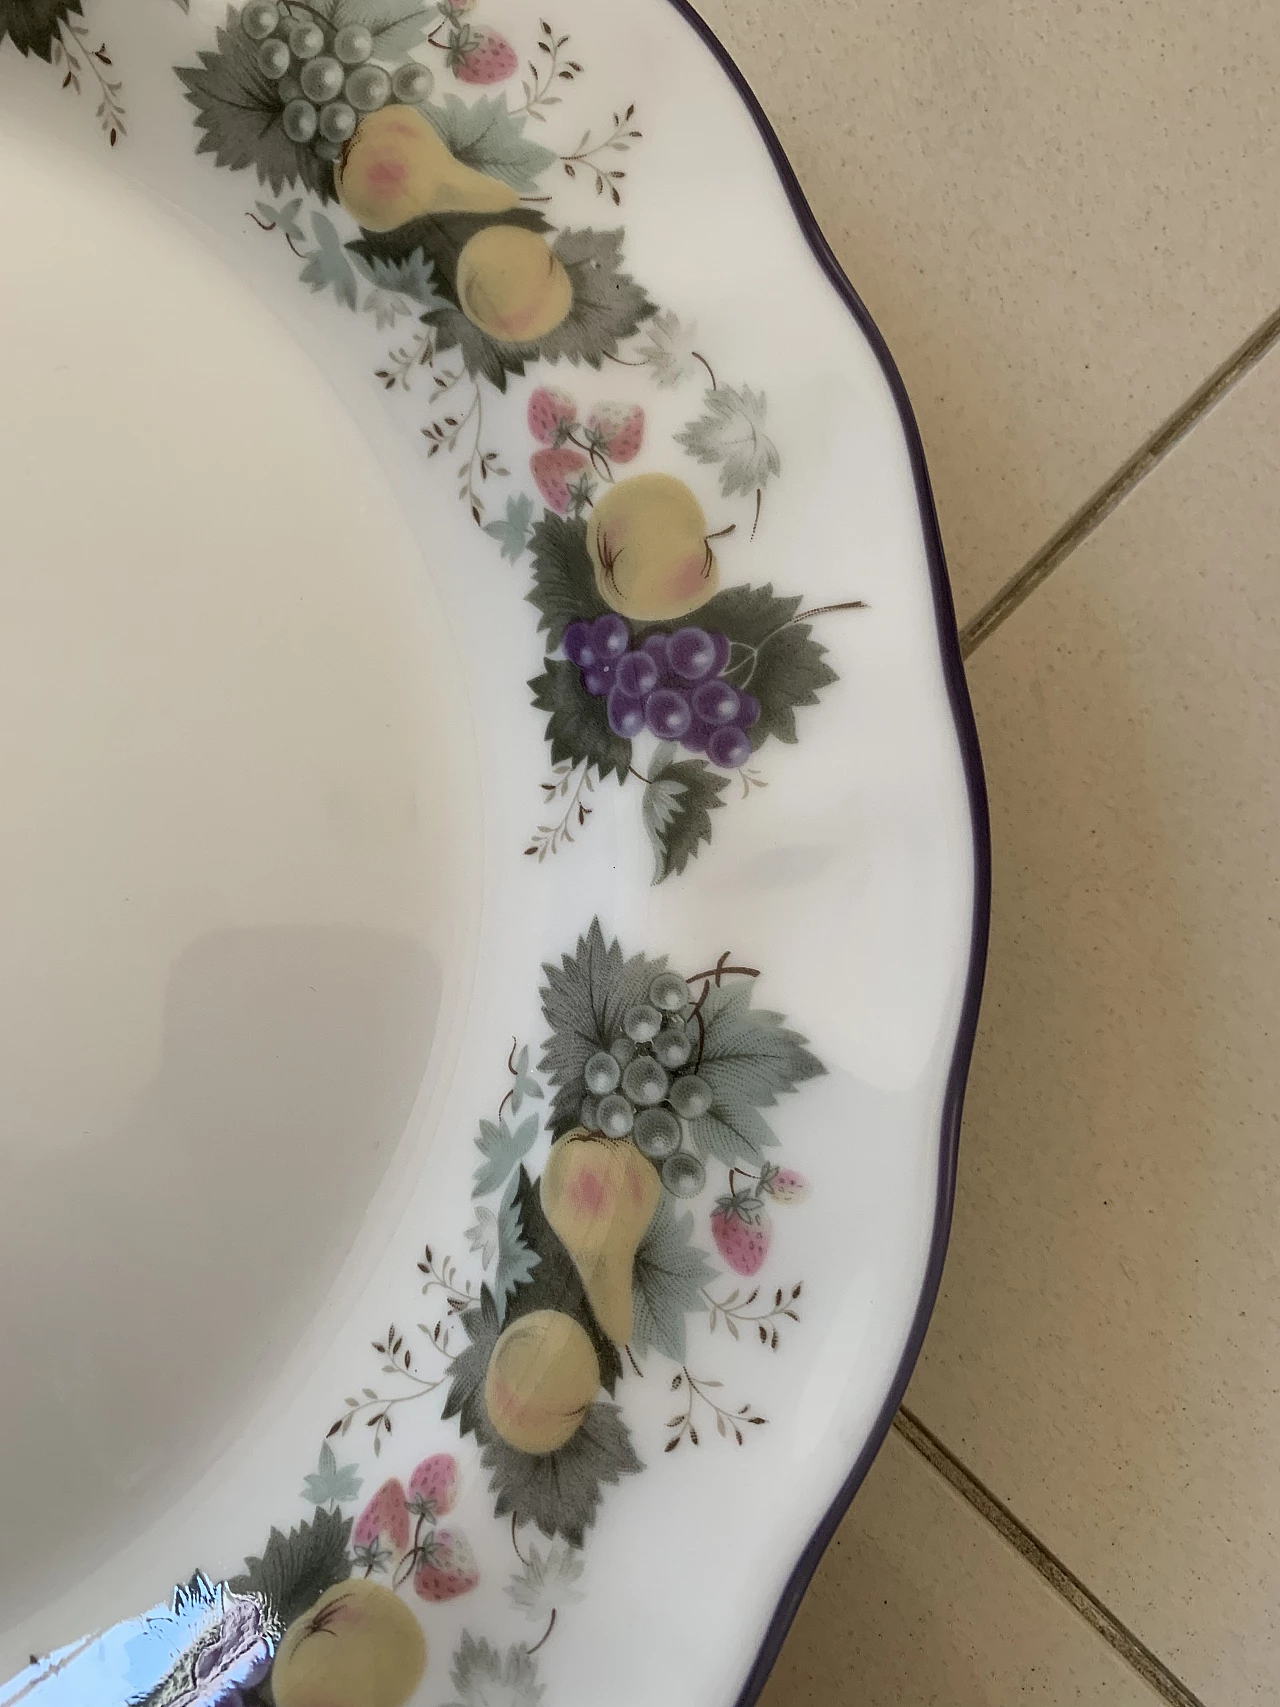 Royal Doulton porcelain plates set with floral decoration, 1990s 16